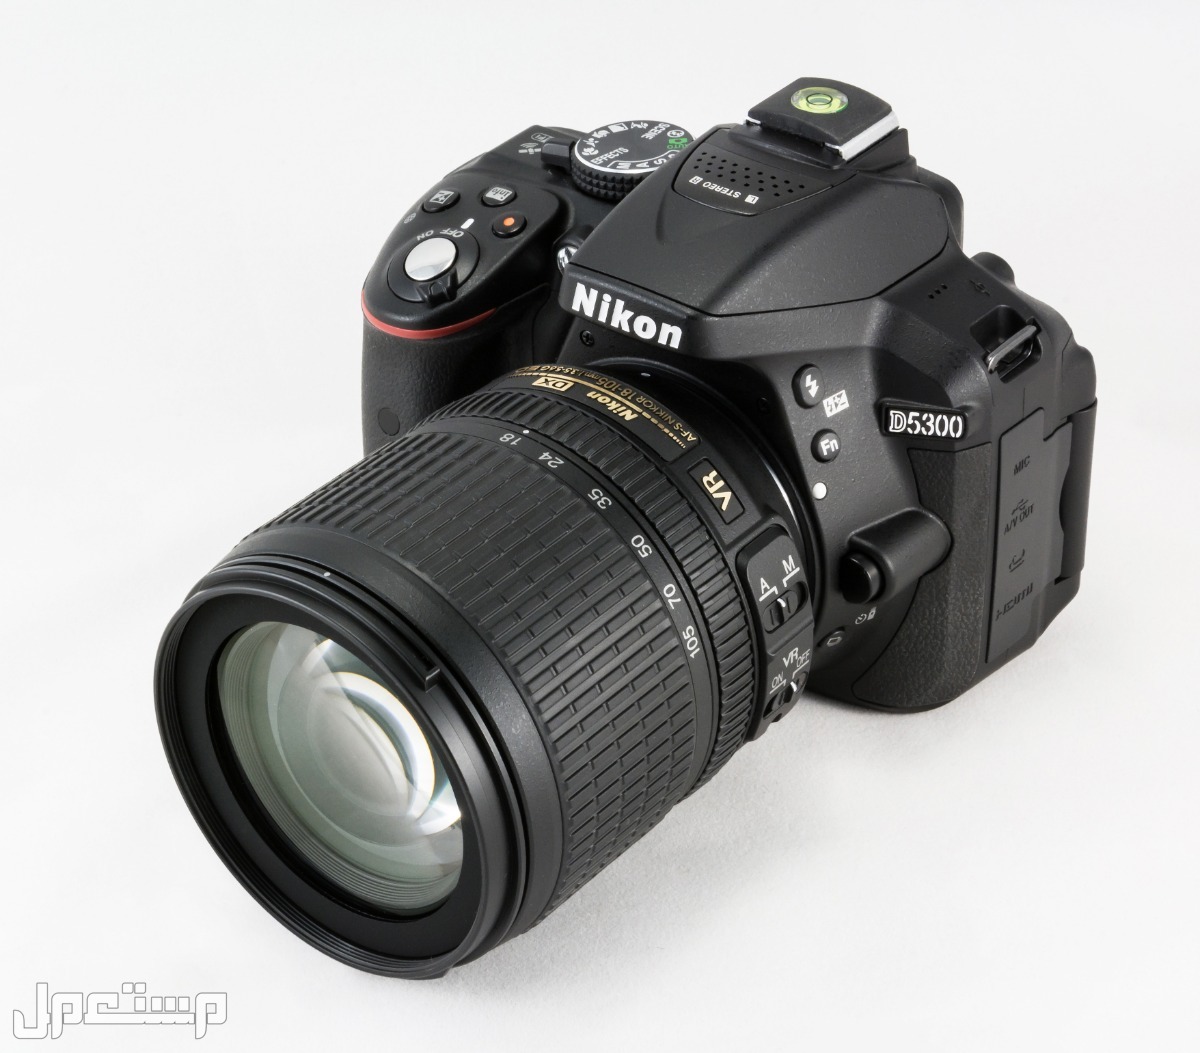 مواصفات ومميزات وأسعار أفضل أنواع كاميرات نيكون للمحترفين في الإمارات العربية المتحدة كاميرا Nikon D5300